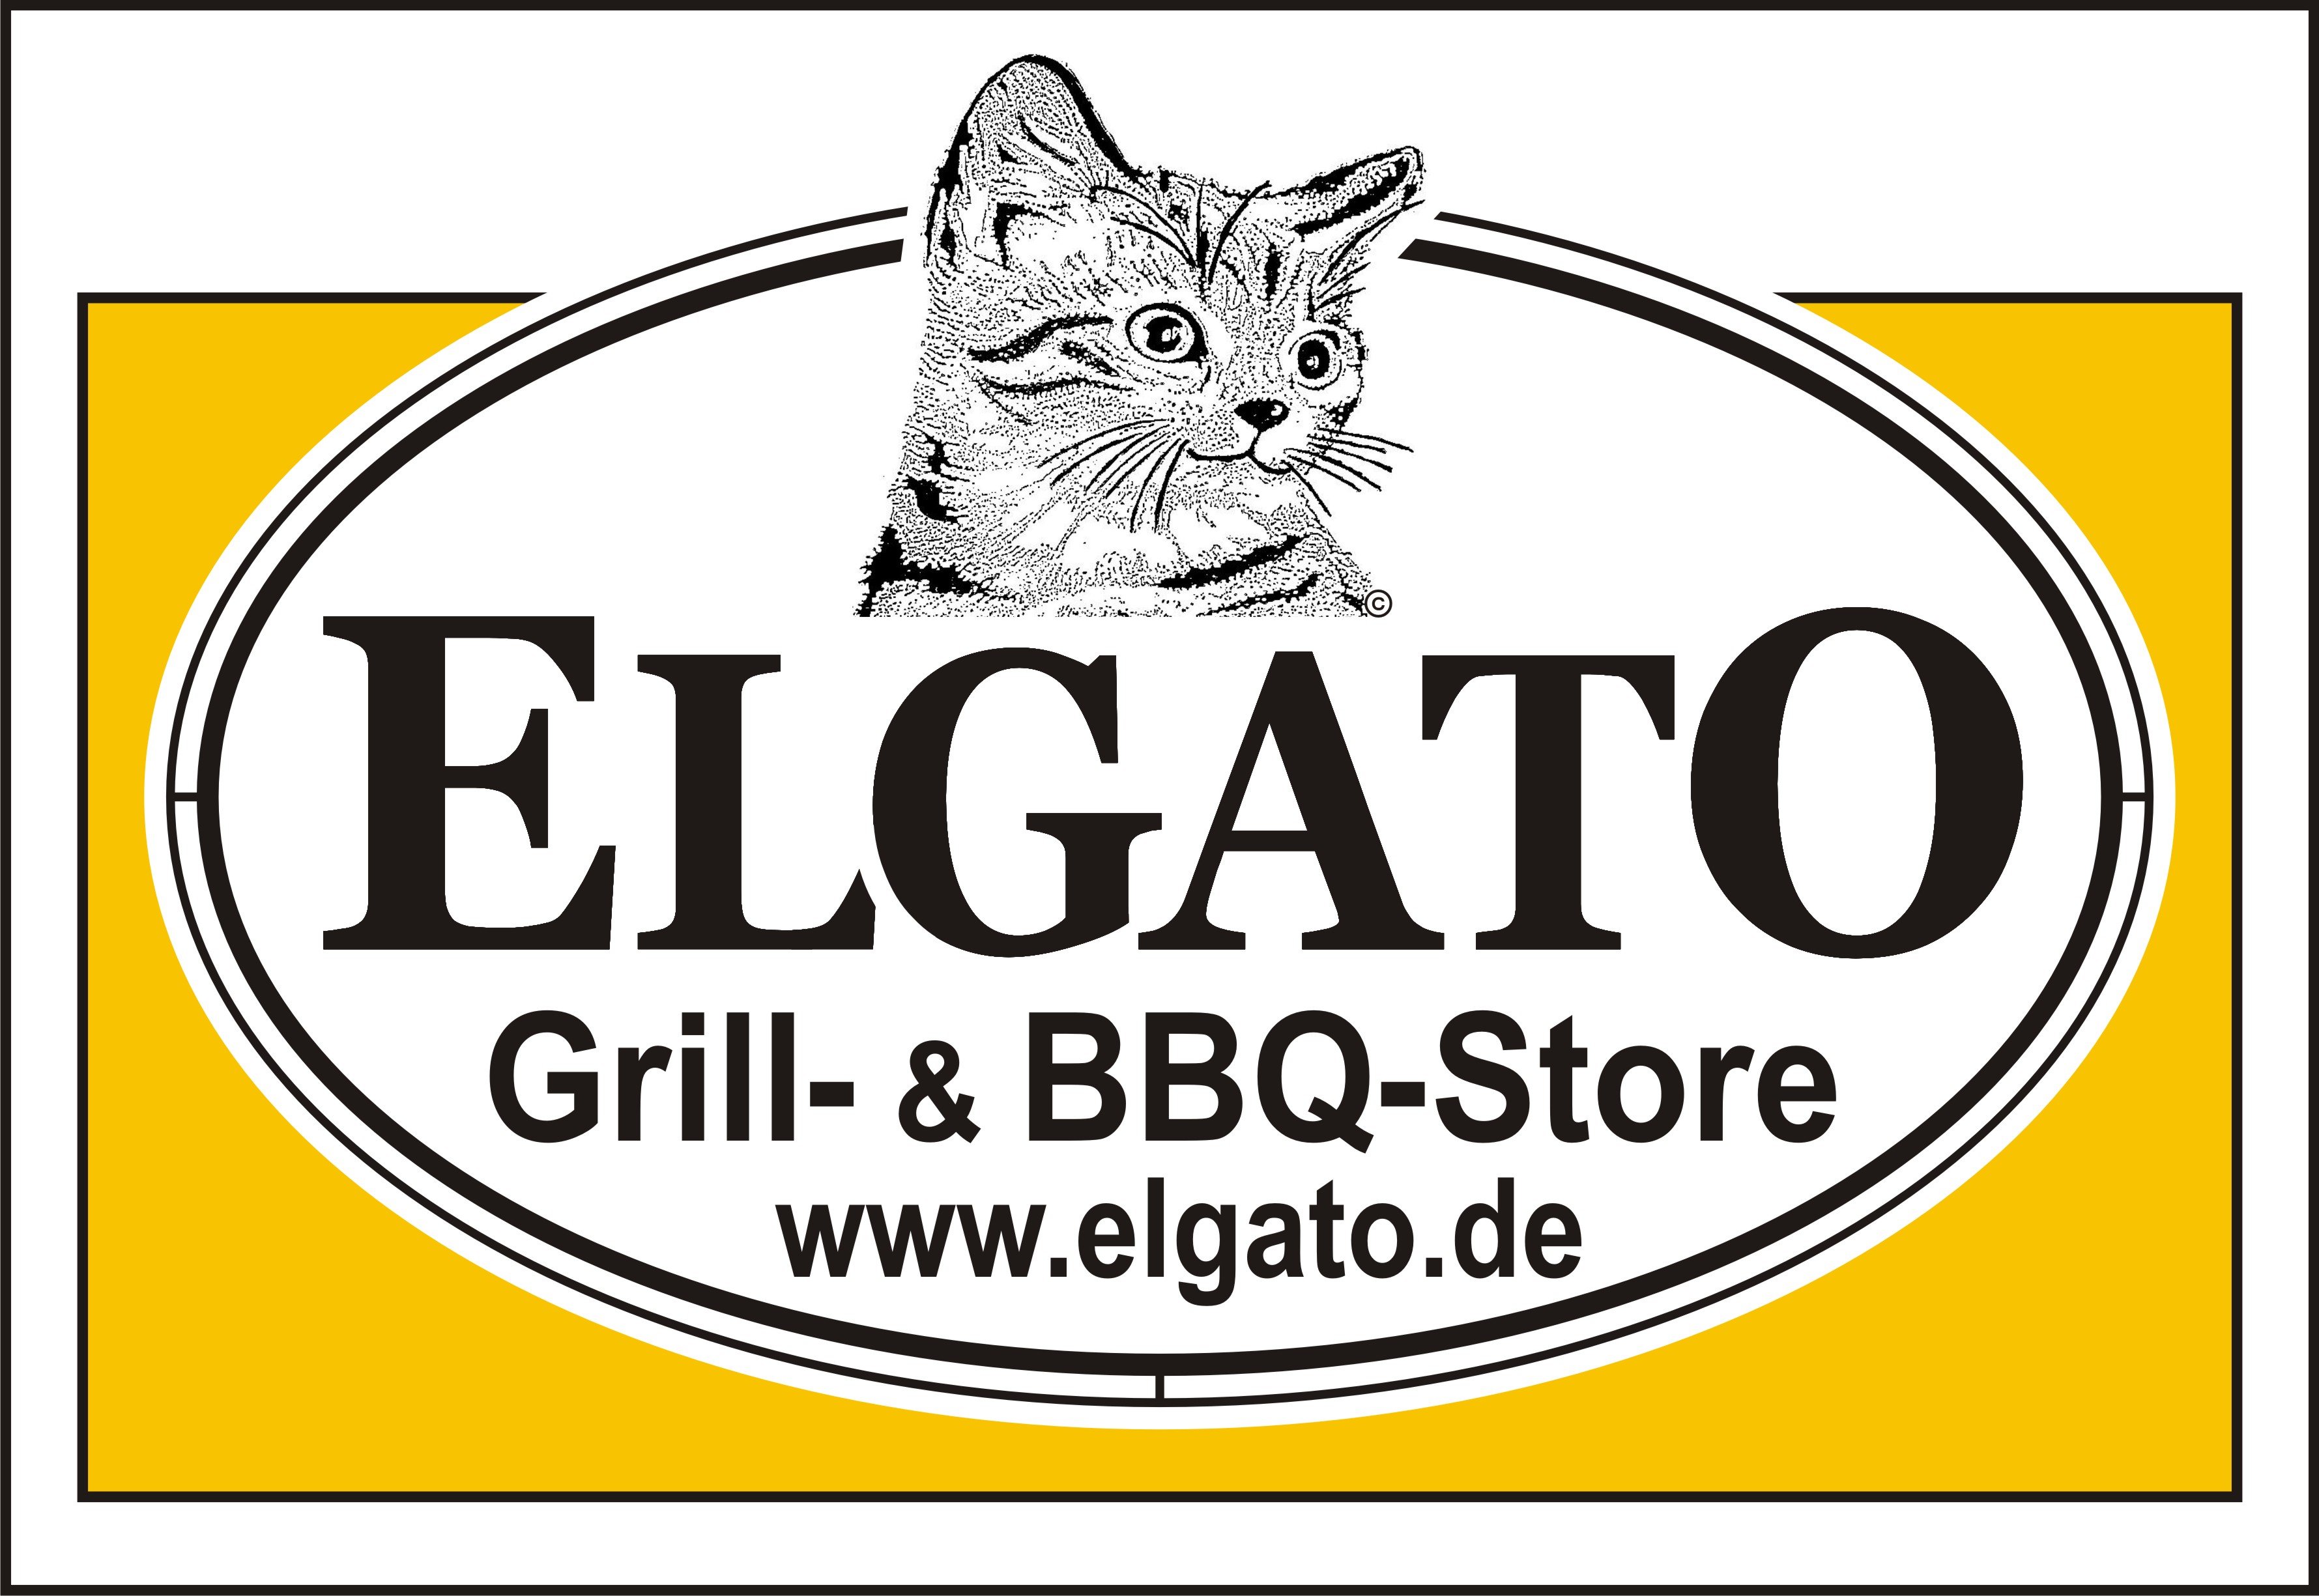 ELGATO Grill- & BBQ-Store - der Fachbetrieb für Grills und BURN OUT Außenküchen.